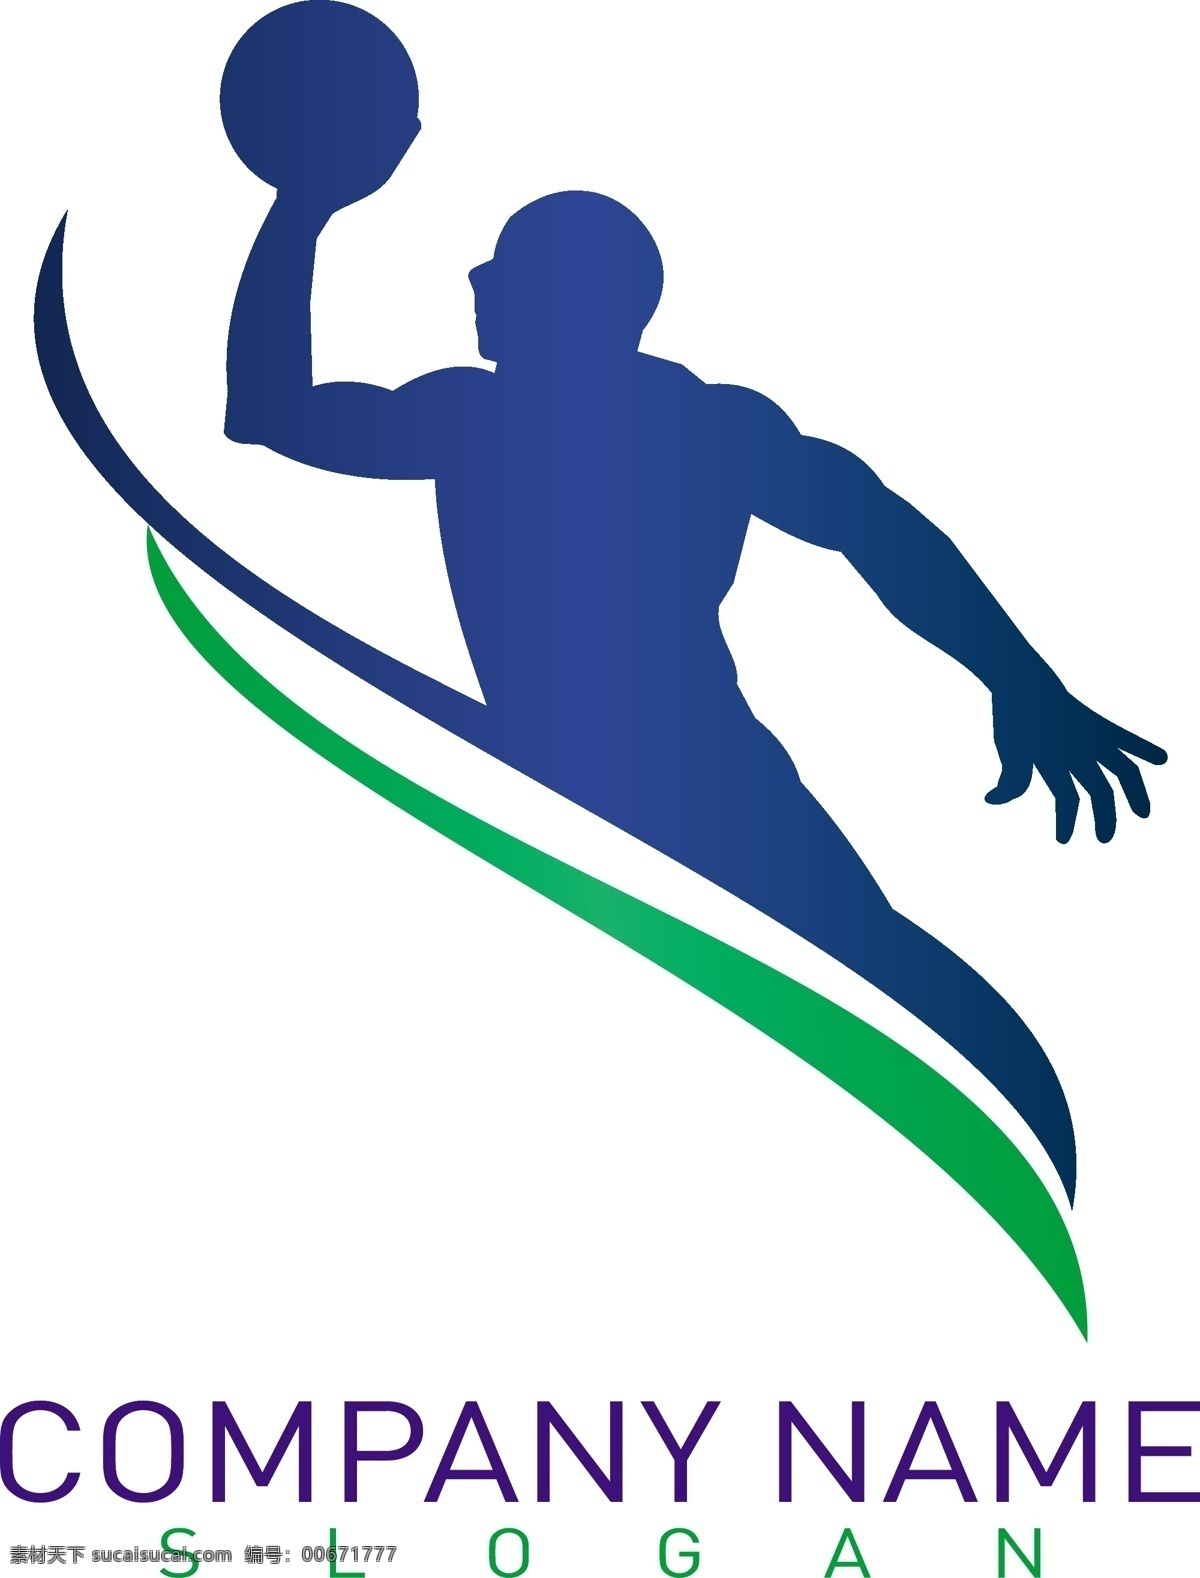 扣篮 灌篮 篮球 运动 logo 创意logo logo图形 标志设计 商标设计 企业logo 公司logo 时尚logo 体育运动 行业标志 标志图标 矢量素材 白色